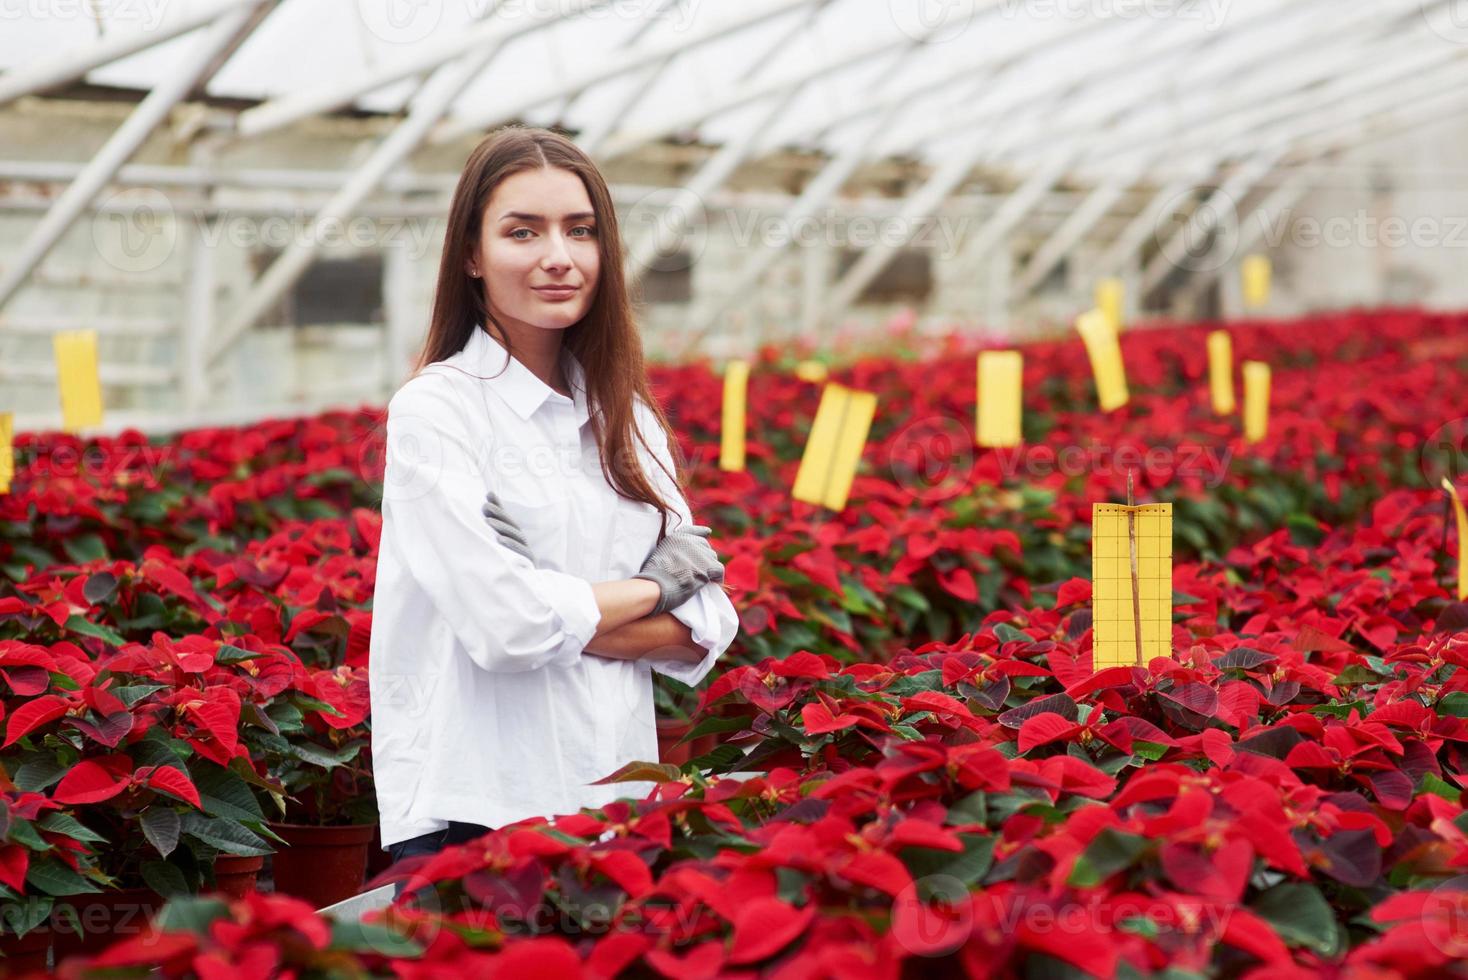 portret van een jong brunette meisje dat in de kas staat met prachtige rode planten in potten en armen gekruist heeft foto